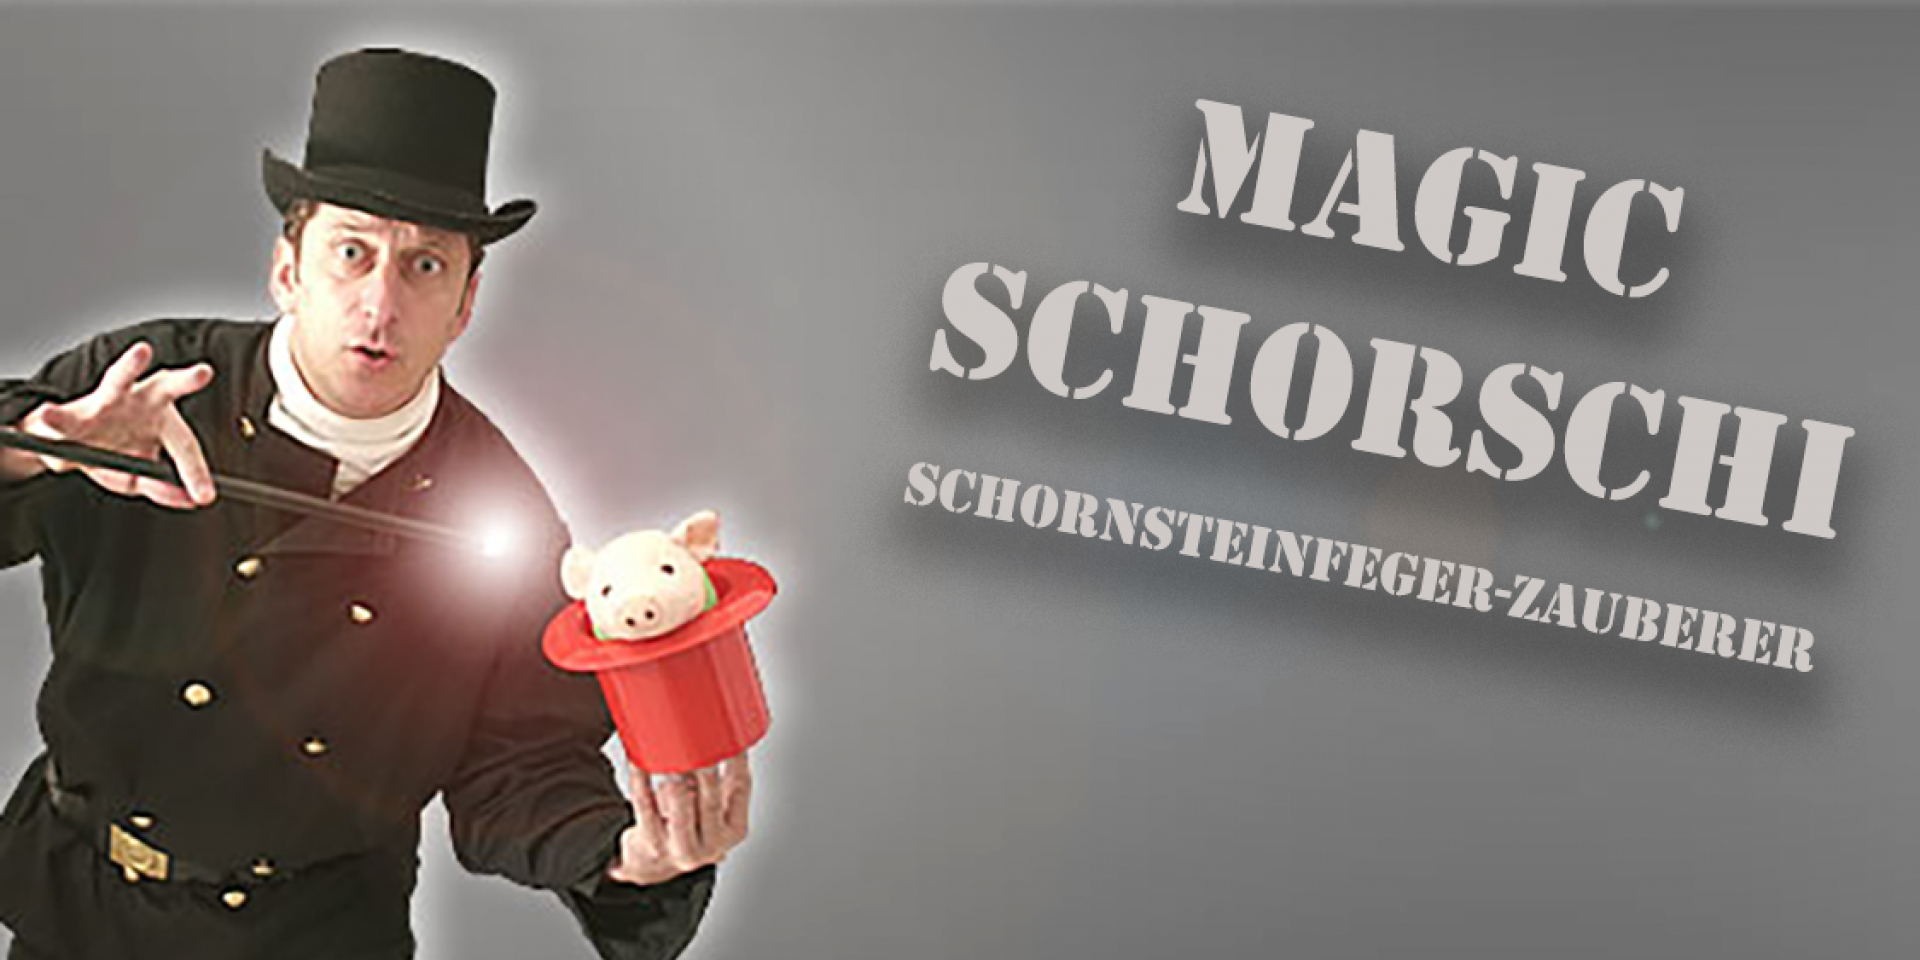 Magic Schorschi | Schornsteinfeger-Zauberer